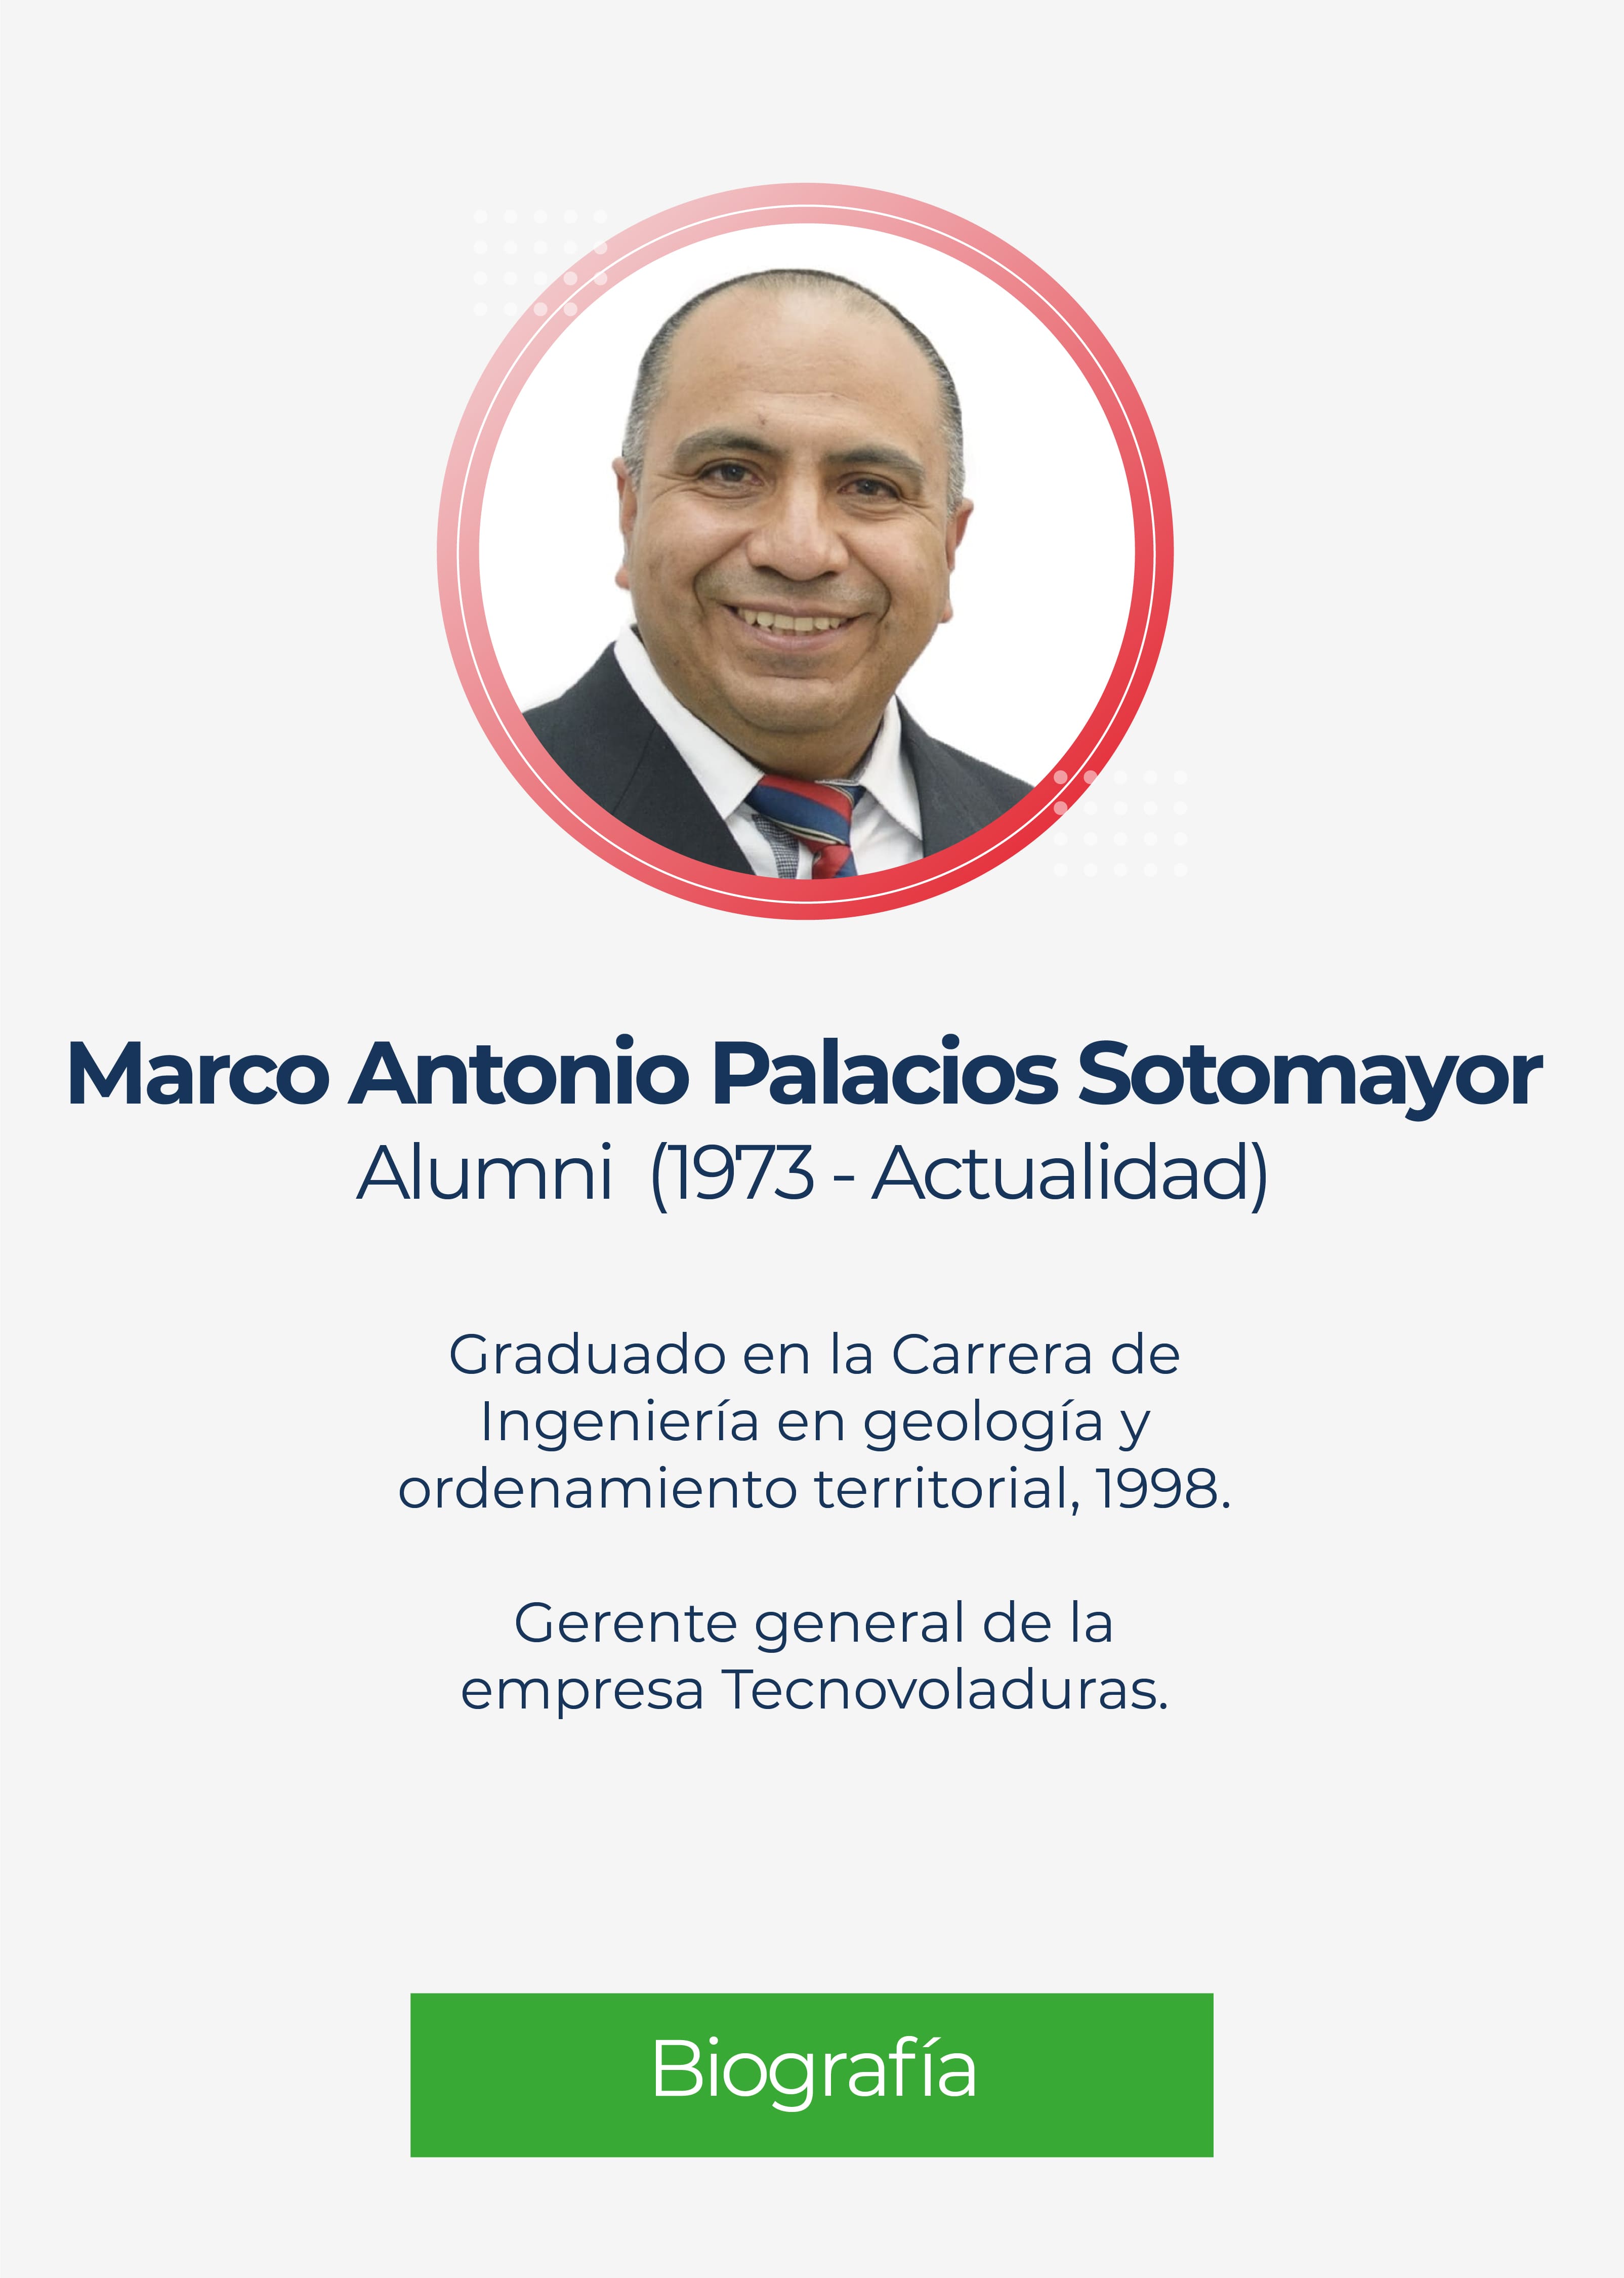 Marco Antonio Palacios Sotomayor